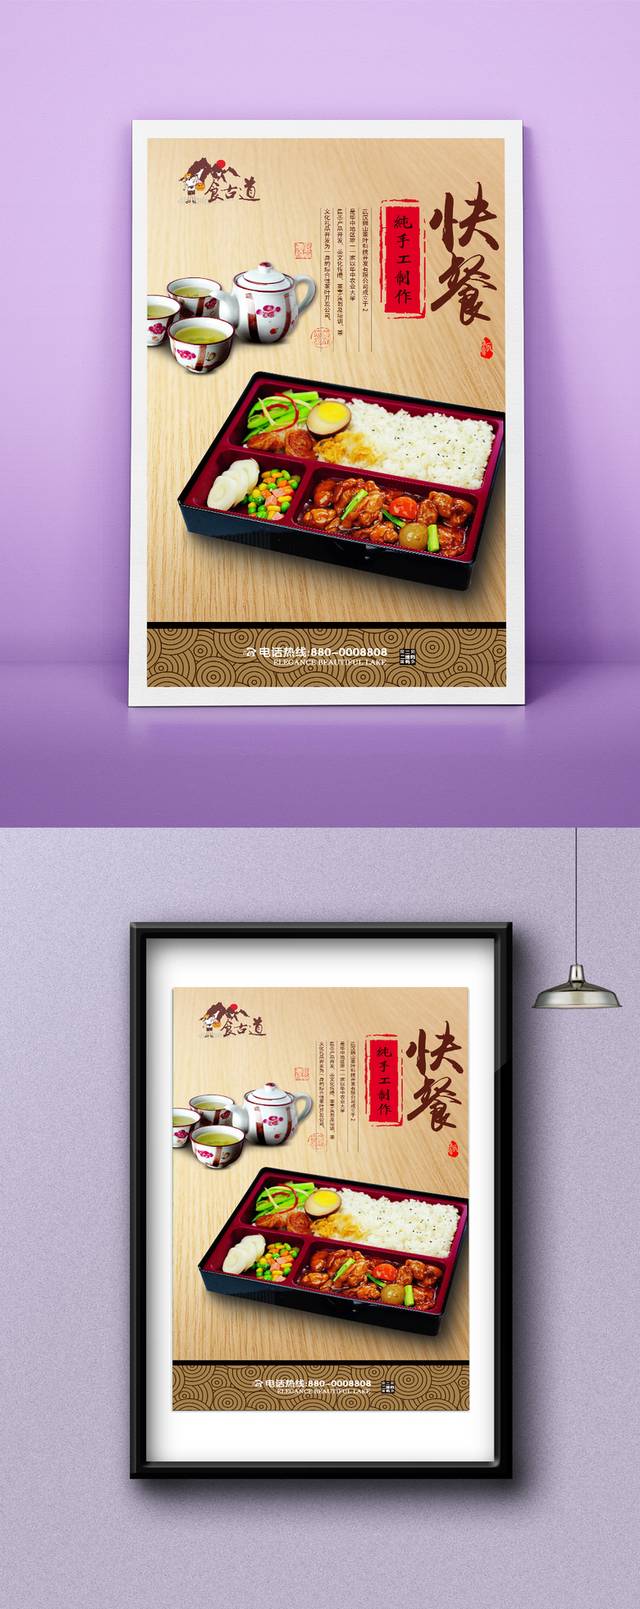 中国风古典快餐宣传海报设计